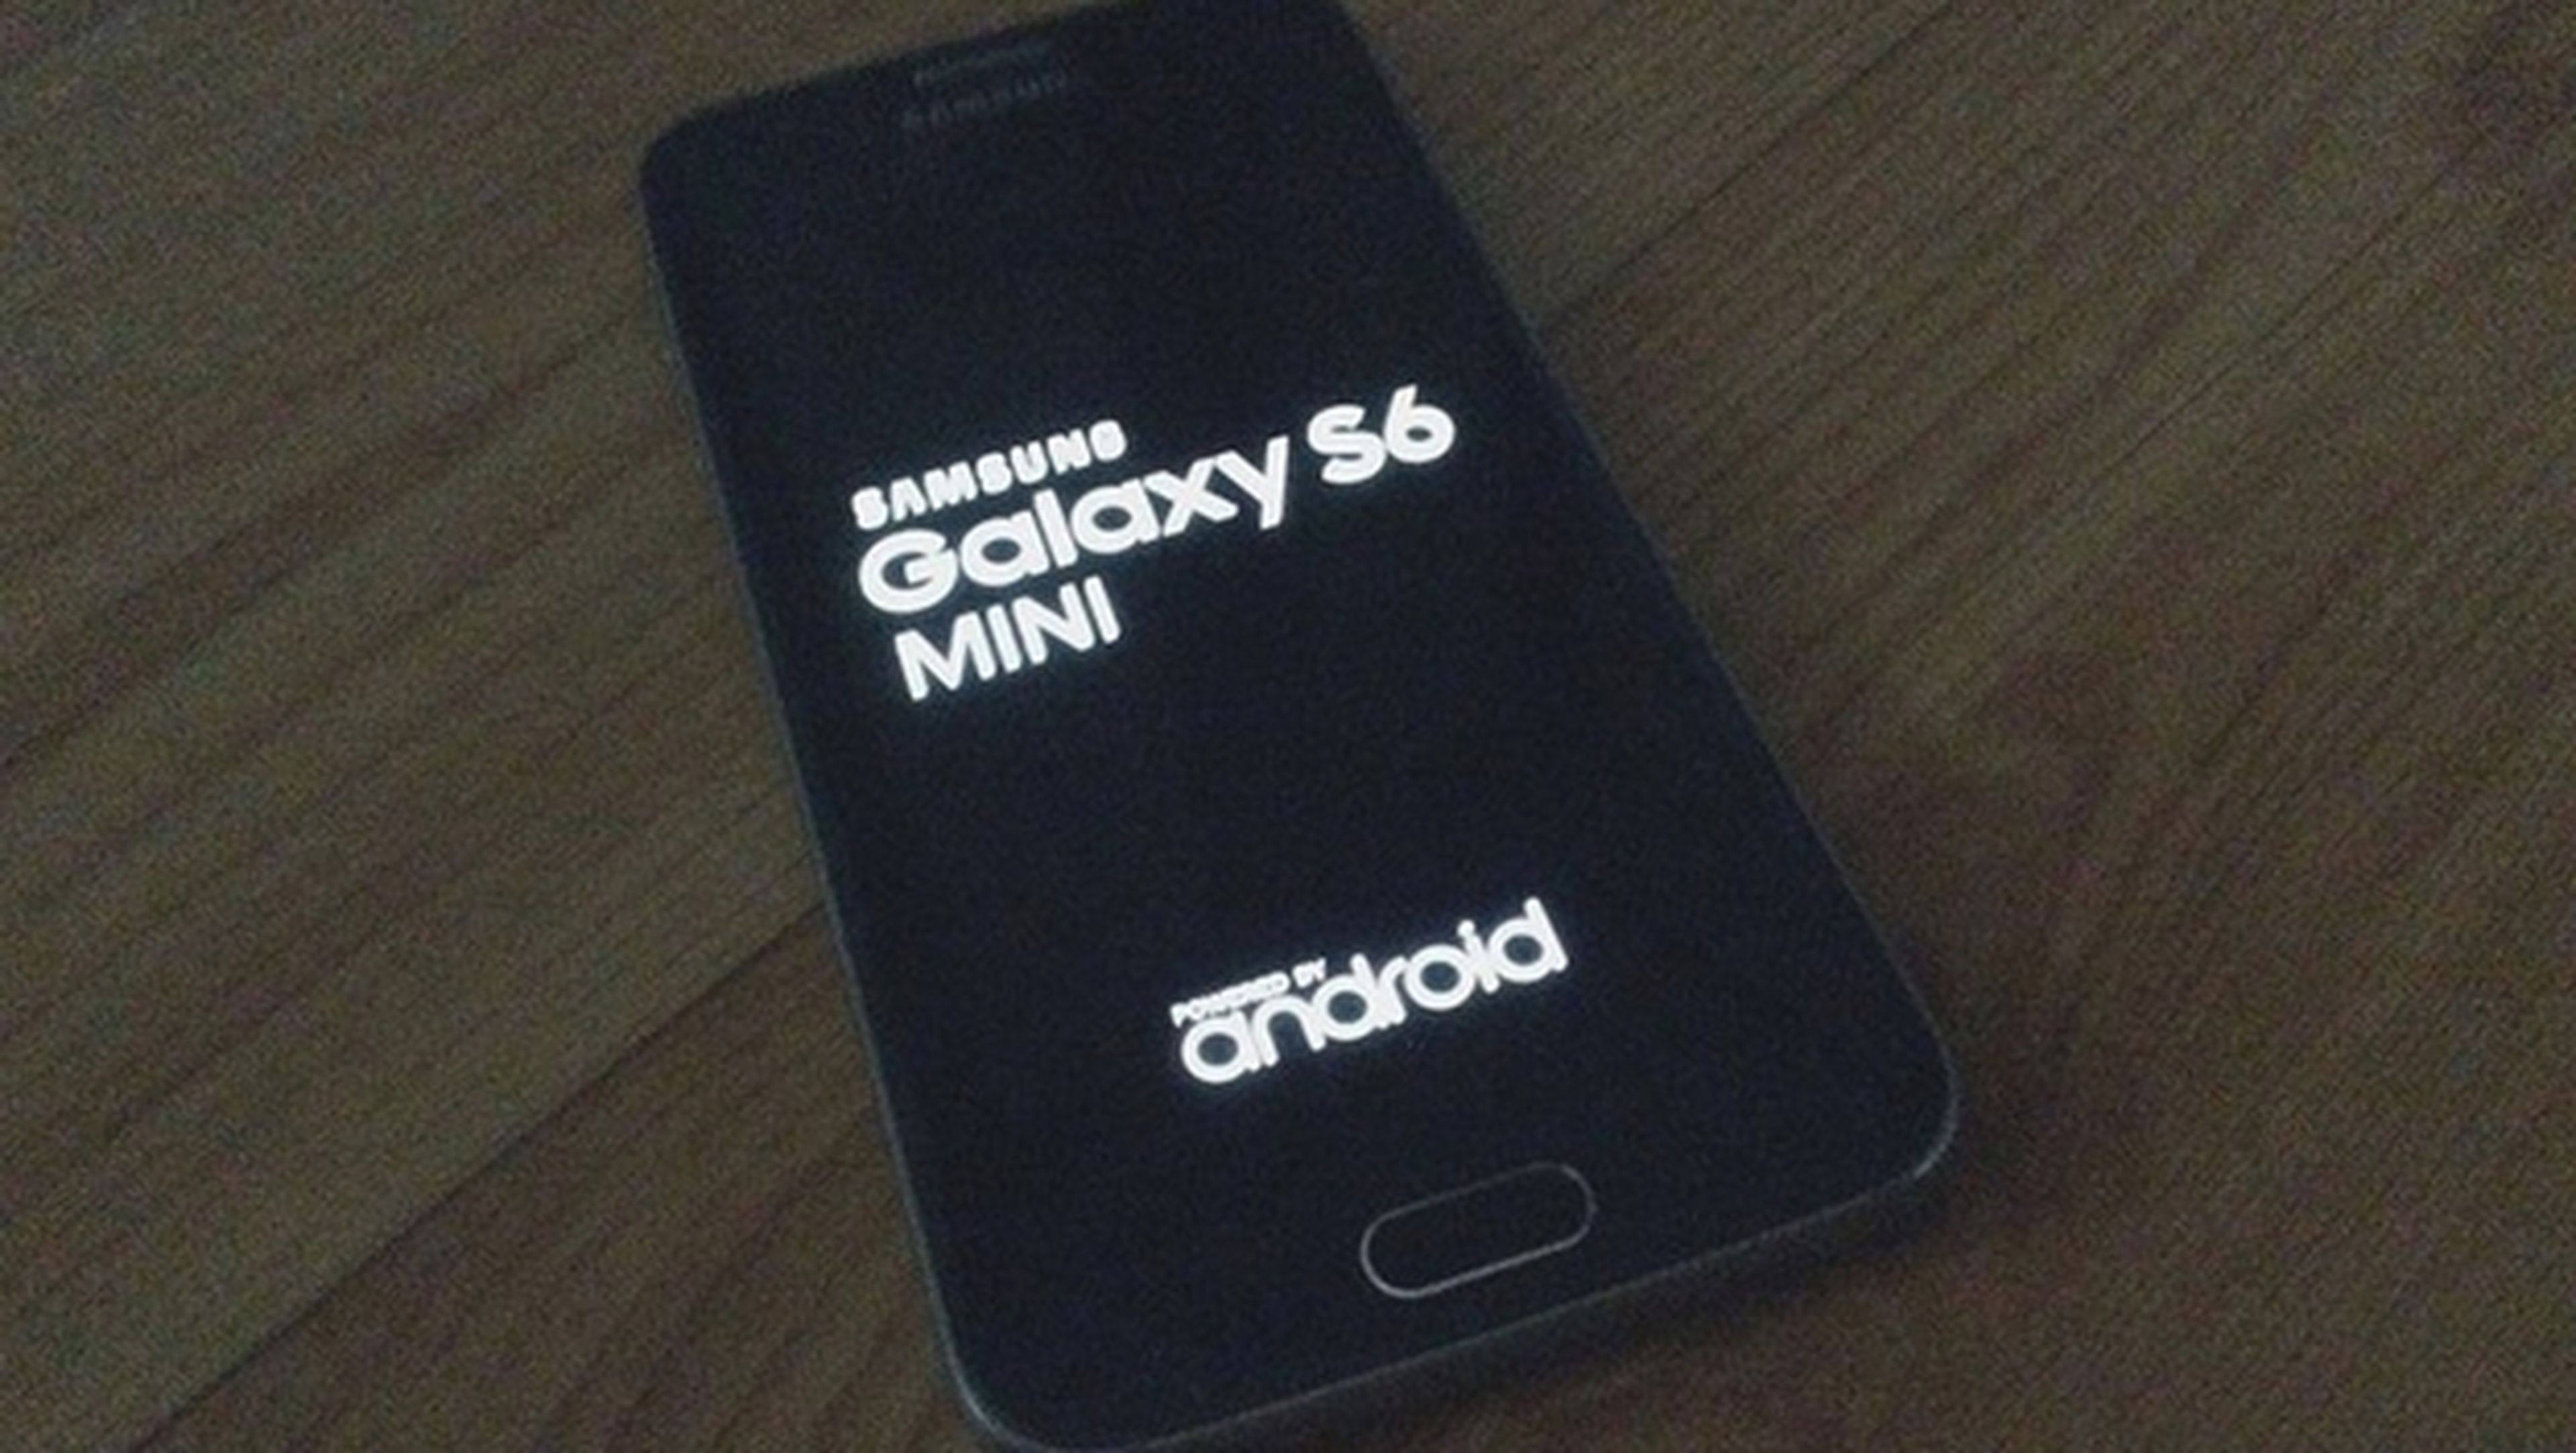 promesa Olla de crack Presidente Samsung Galaxy S6 Mini, primeras imágenes y especificaciones | Computer Hoy